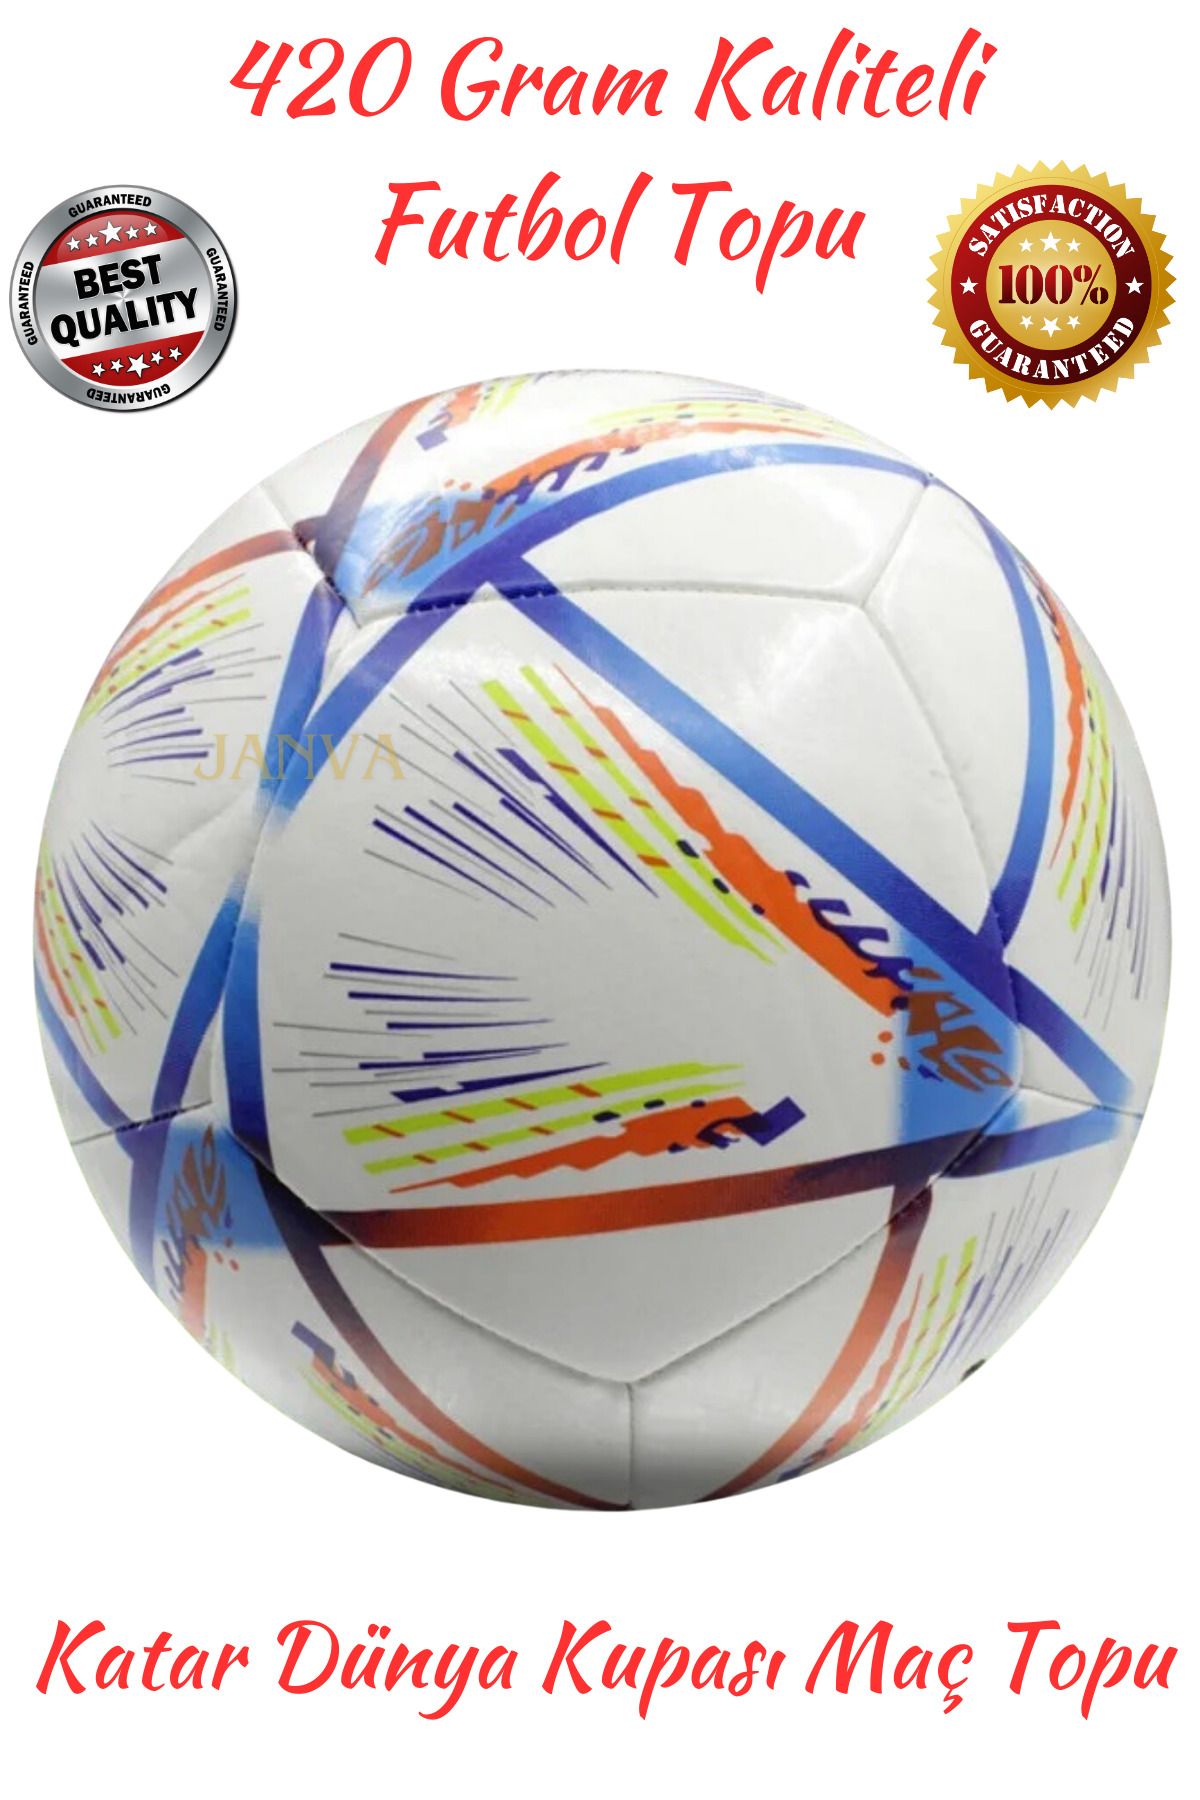 Janva Dünya Kupası 1.kalite Profosyonel Futbol Topu Halı Saha Çim Saha Sporcu Top (420 GRAM) 5 Numara